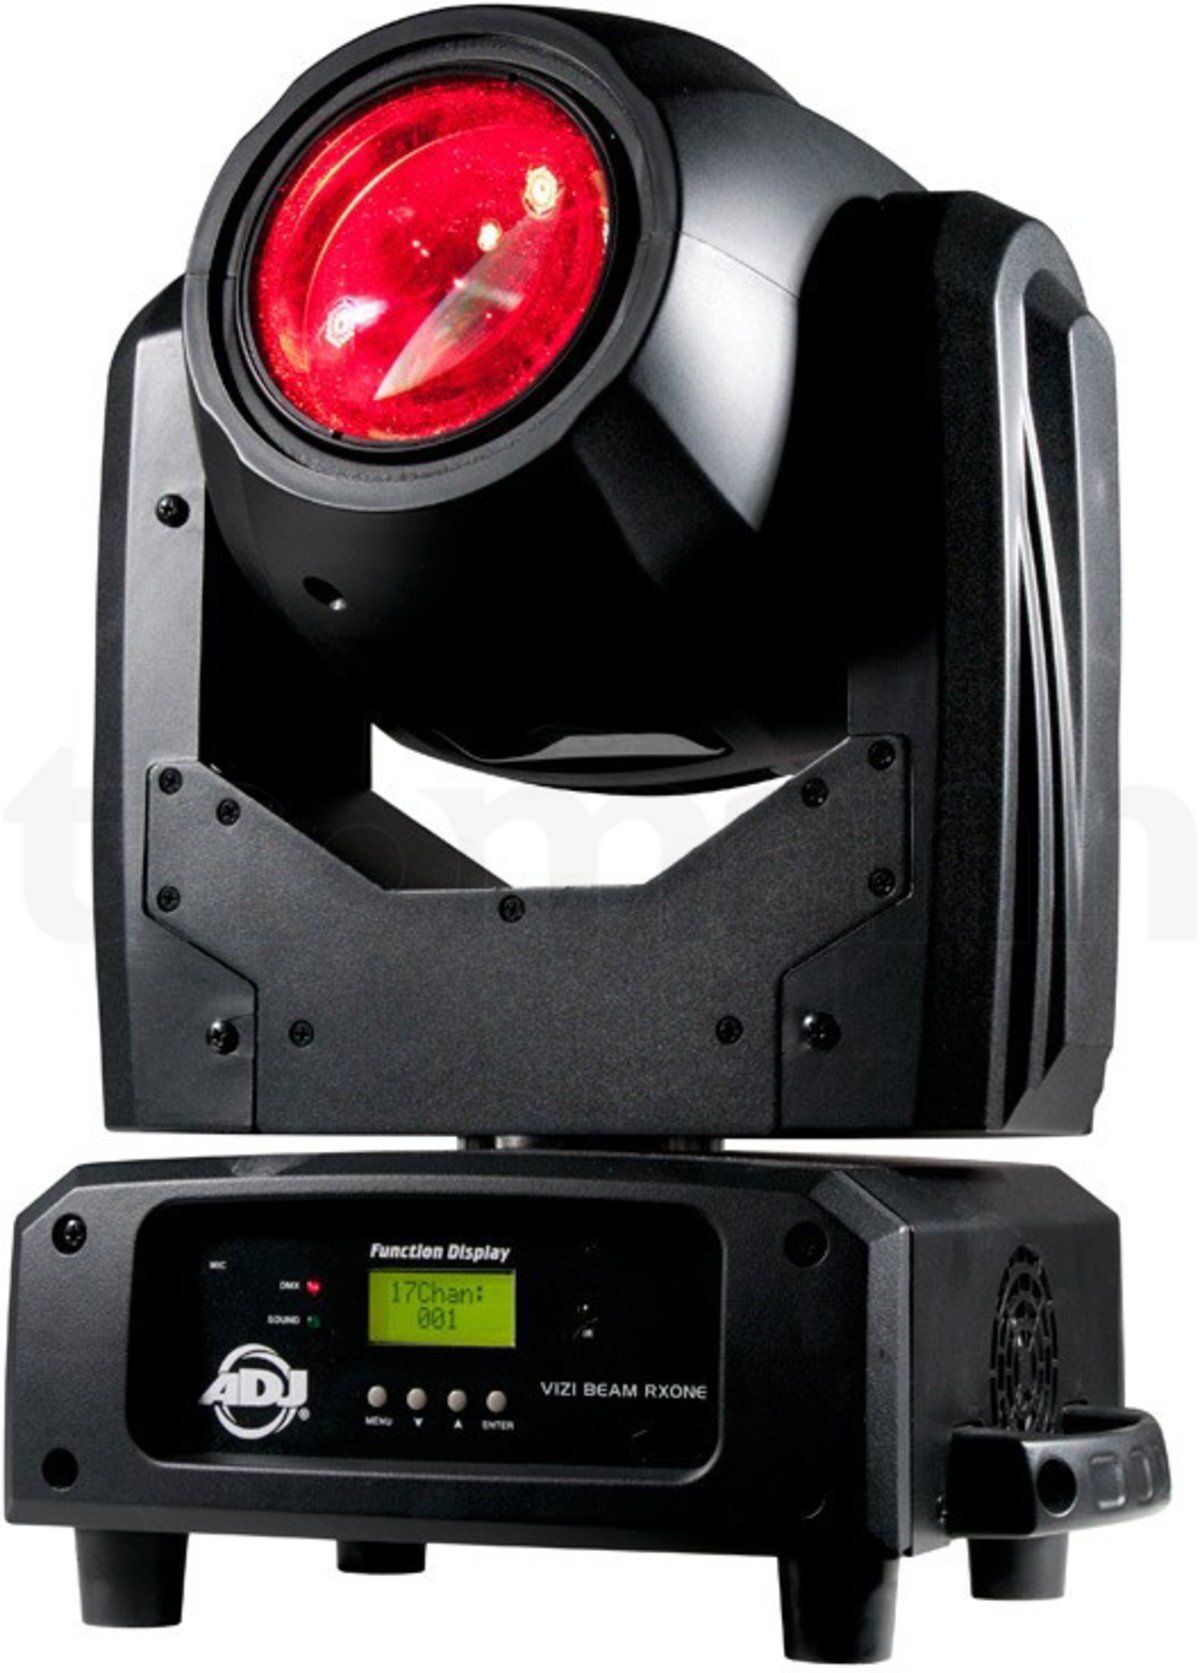 Вращающаяся прожекторы. Световое оборудование American DJ. ADJ vizi Beam RXONE. Beam 360 светомузыка вращающаяся голова. Световое оборудование DTS XR 300 Beam.